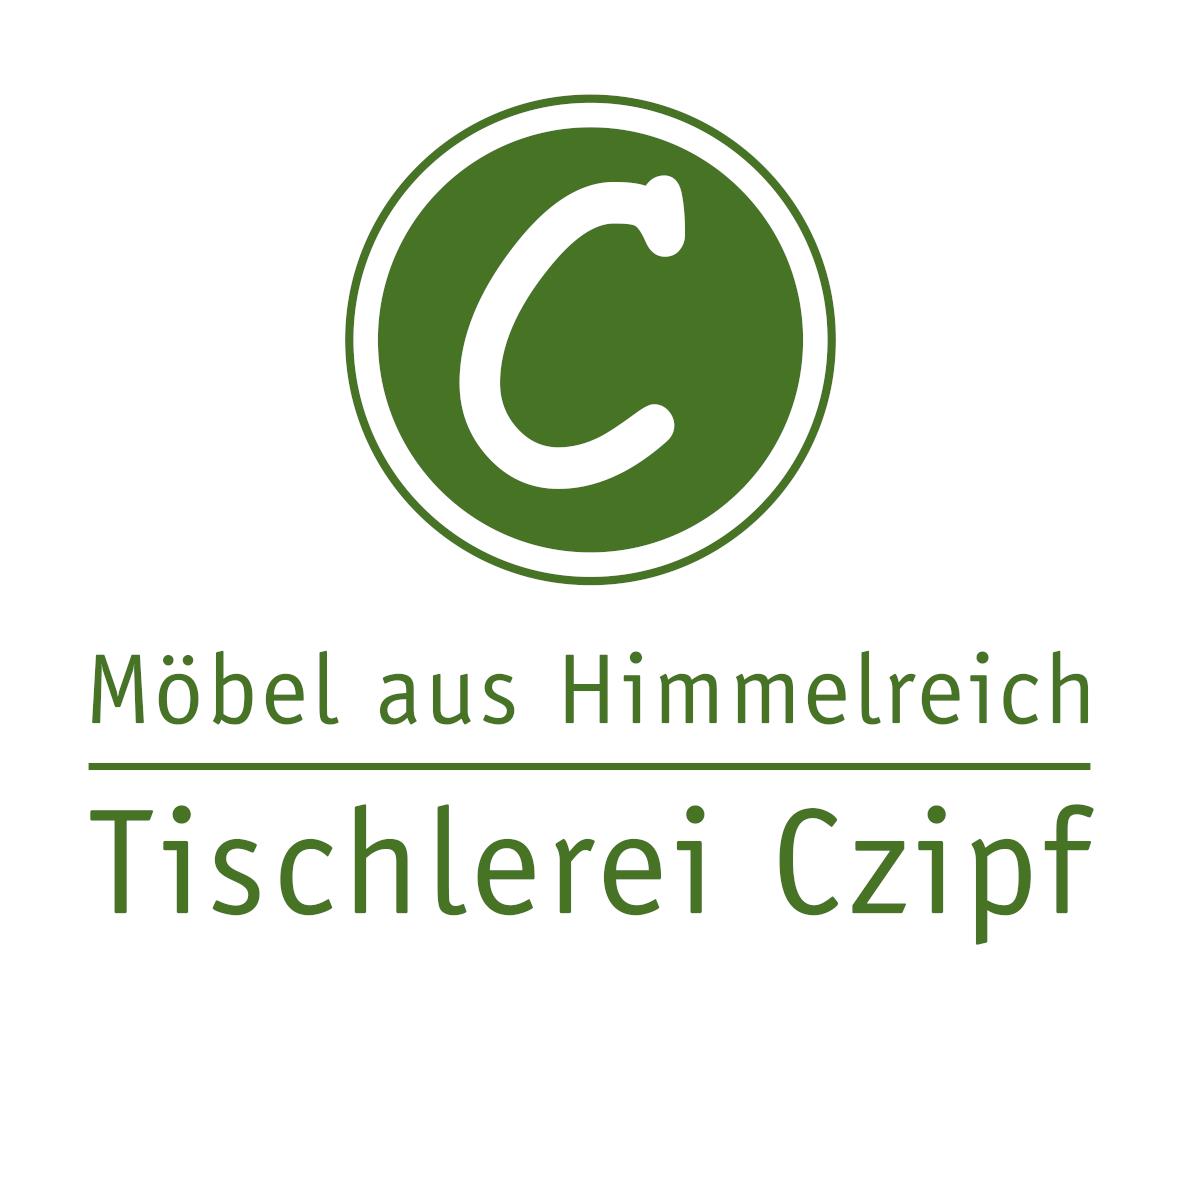 Möbel aus Himmelreich – Tischlerei Czipf